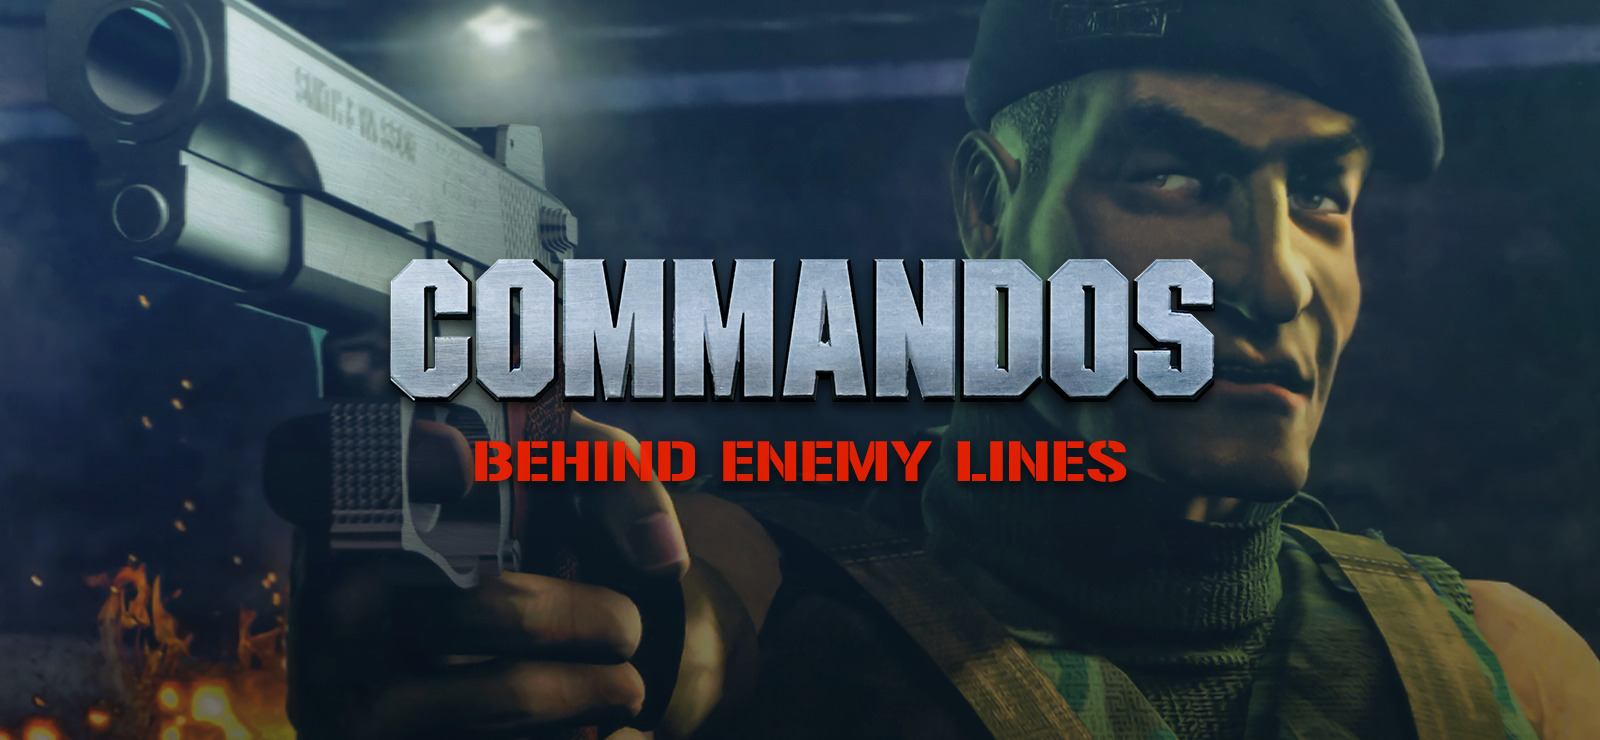 commando behind enemy lines